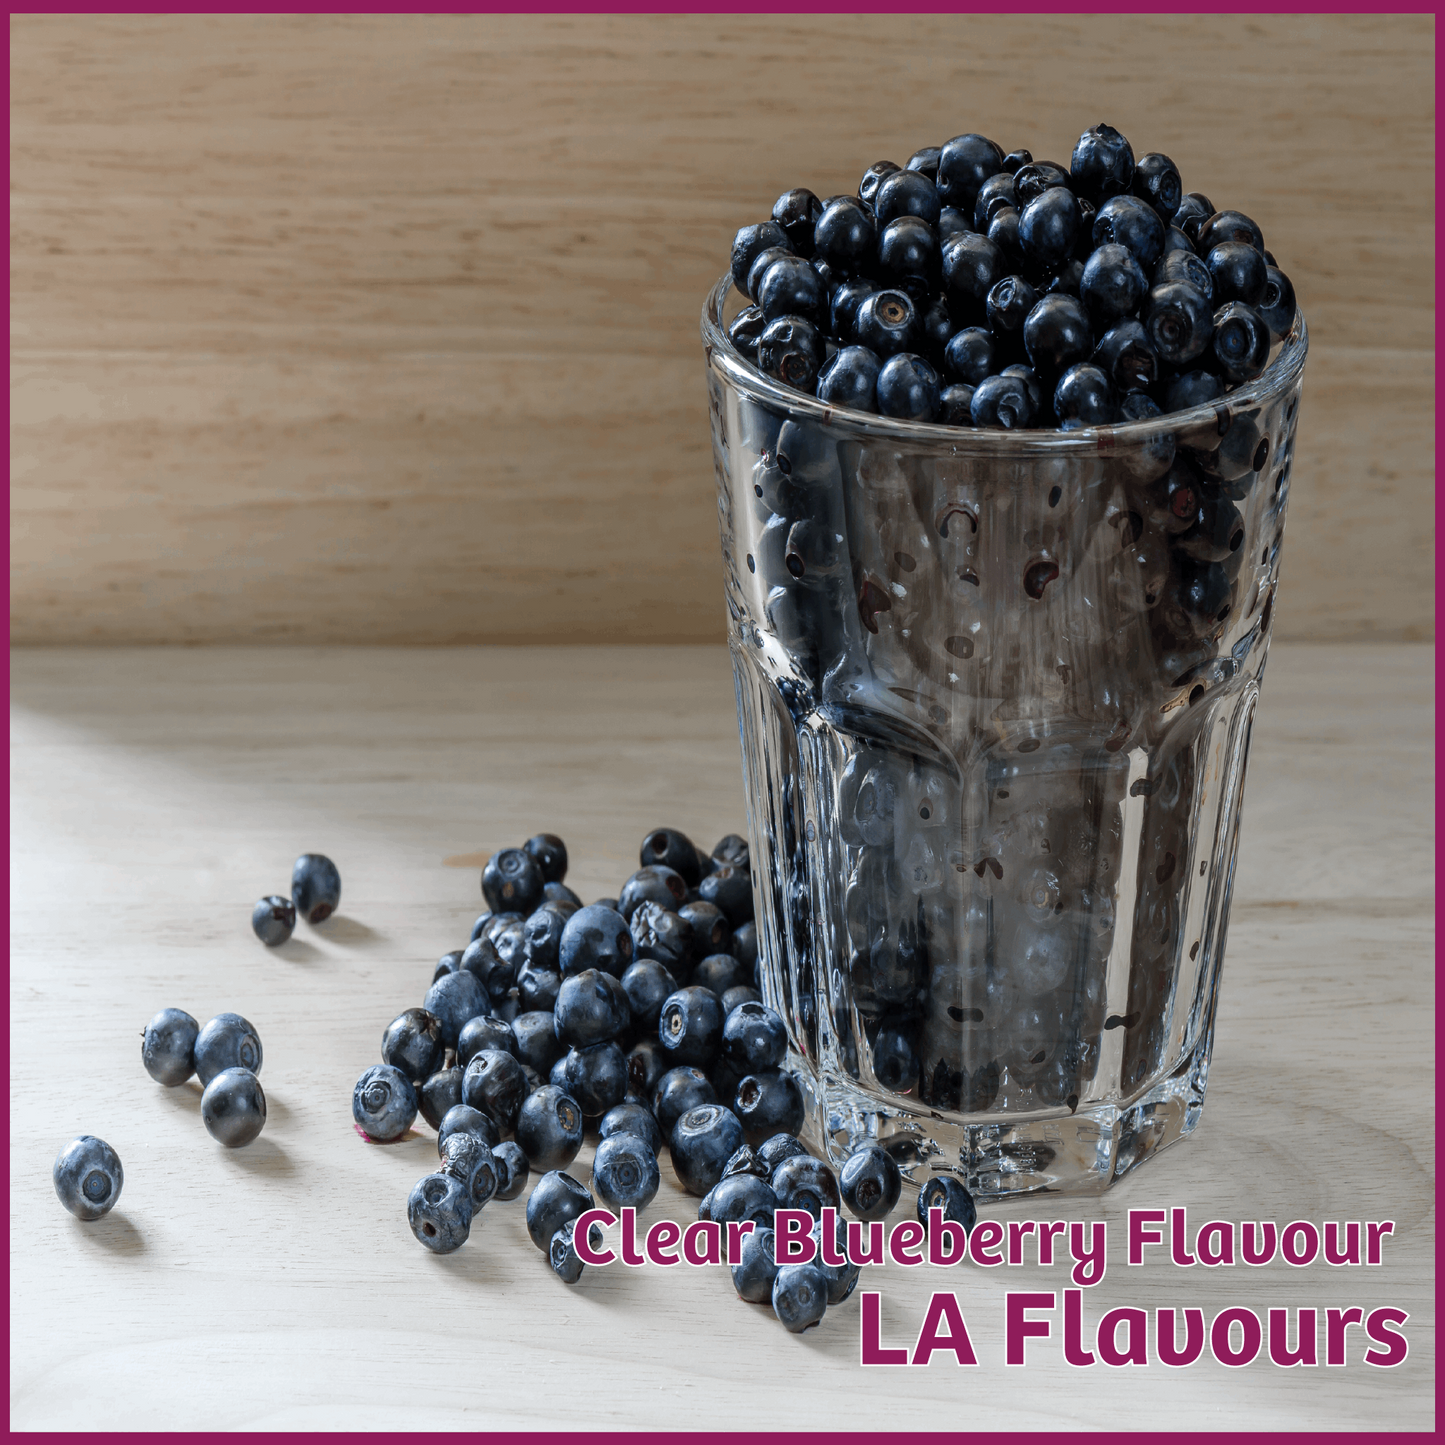 Clear Blueberry Flavour - LA Flavours - Flavour Fog - Canada's flavour depot.